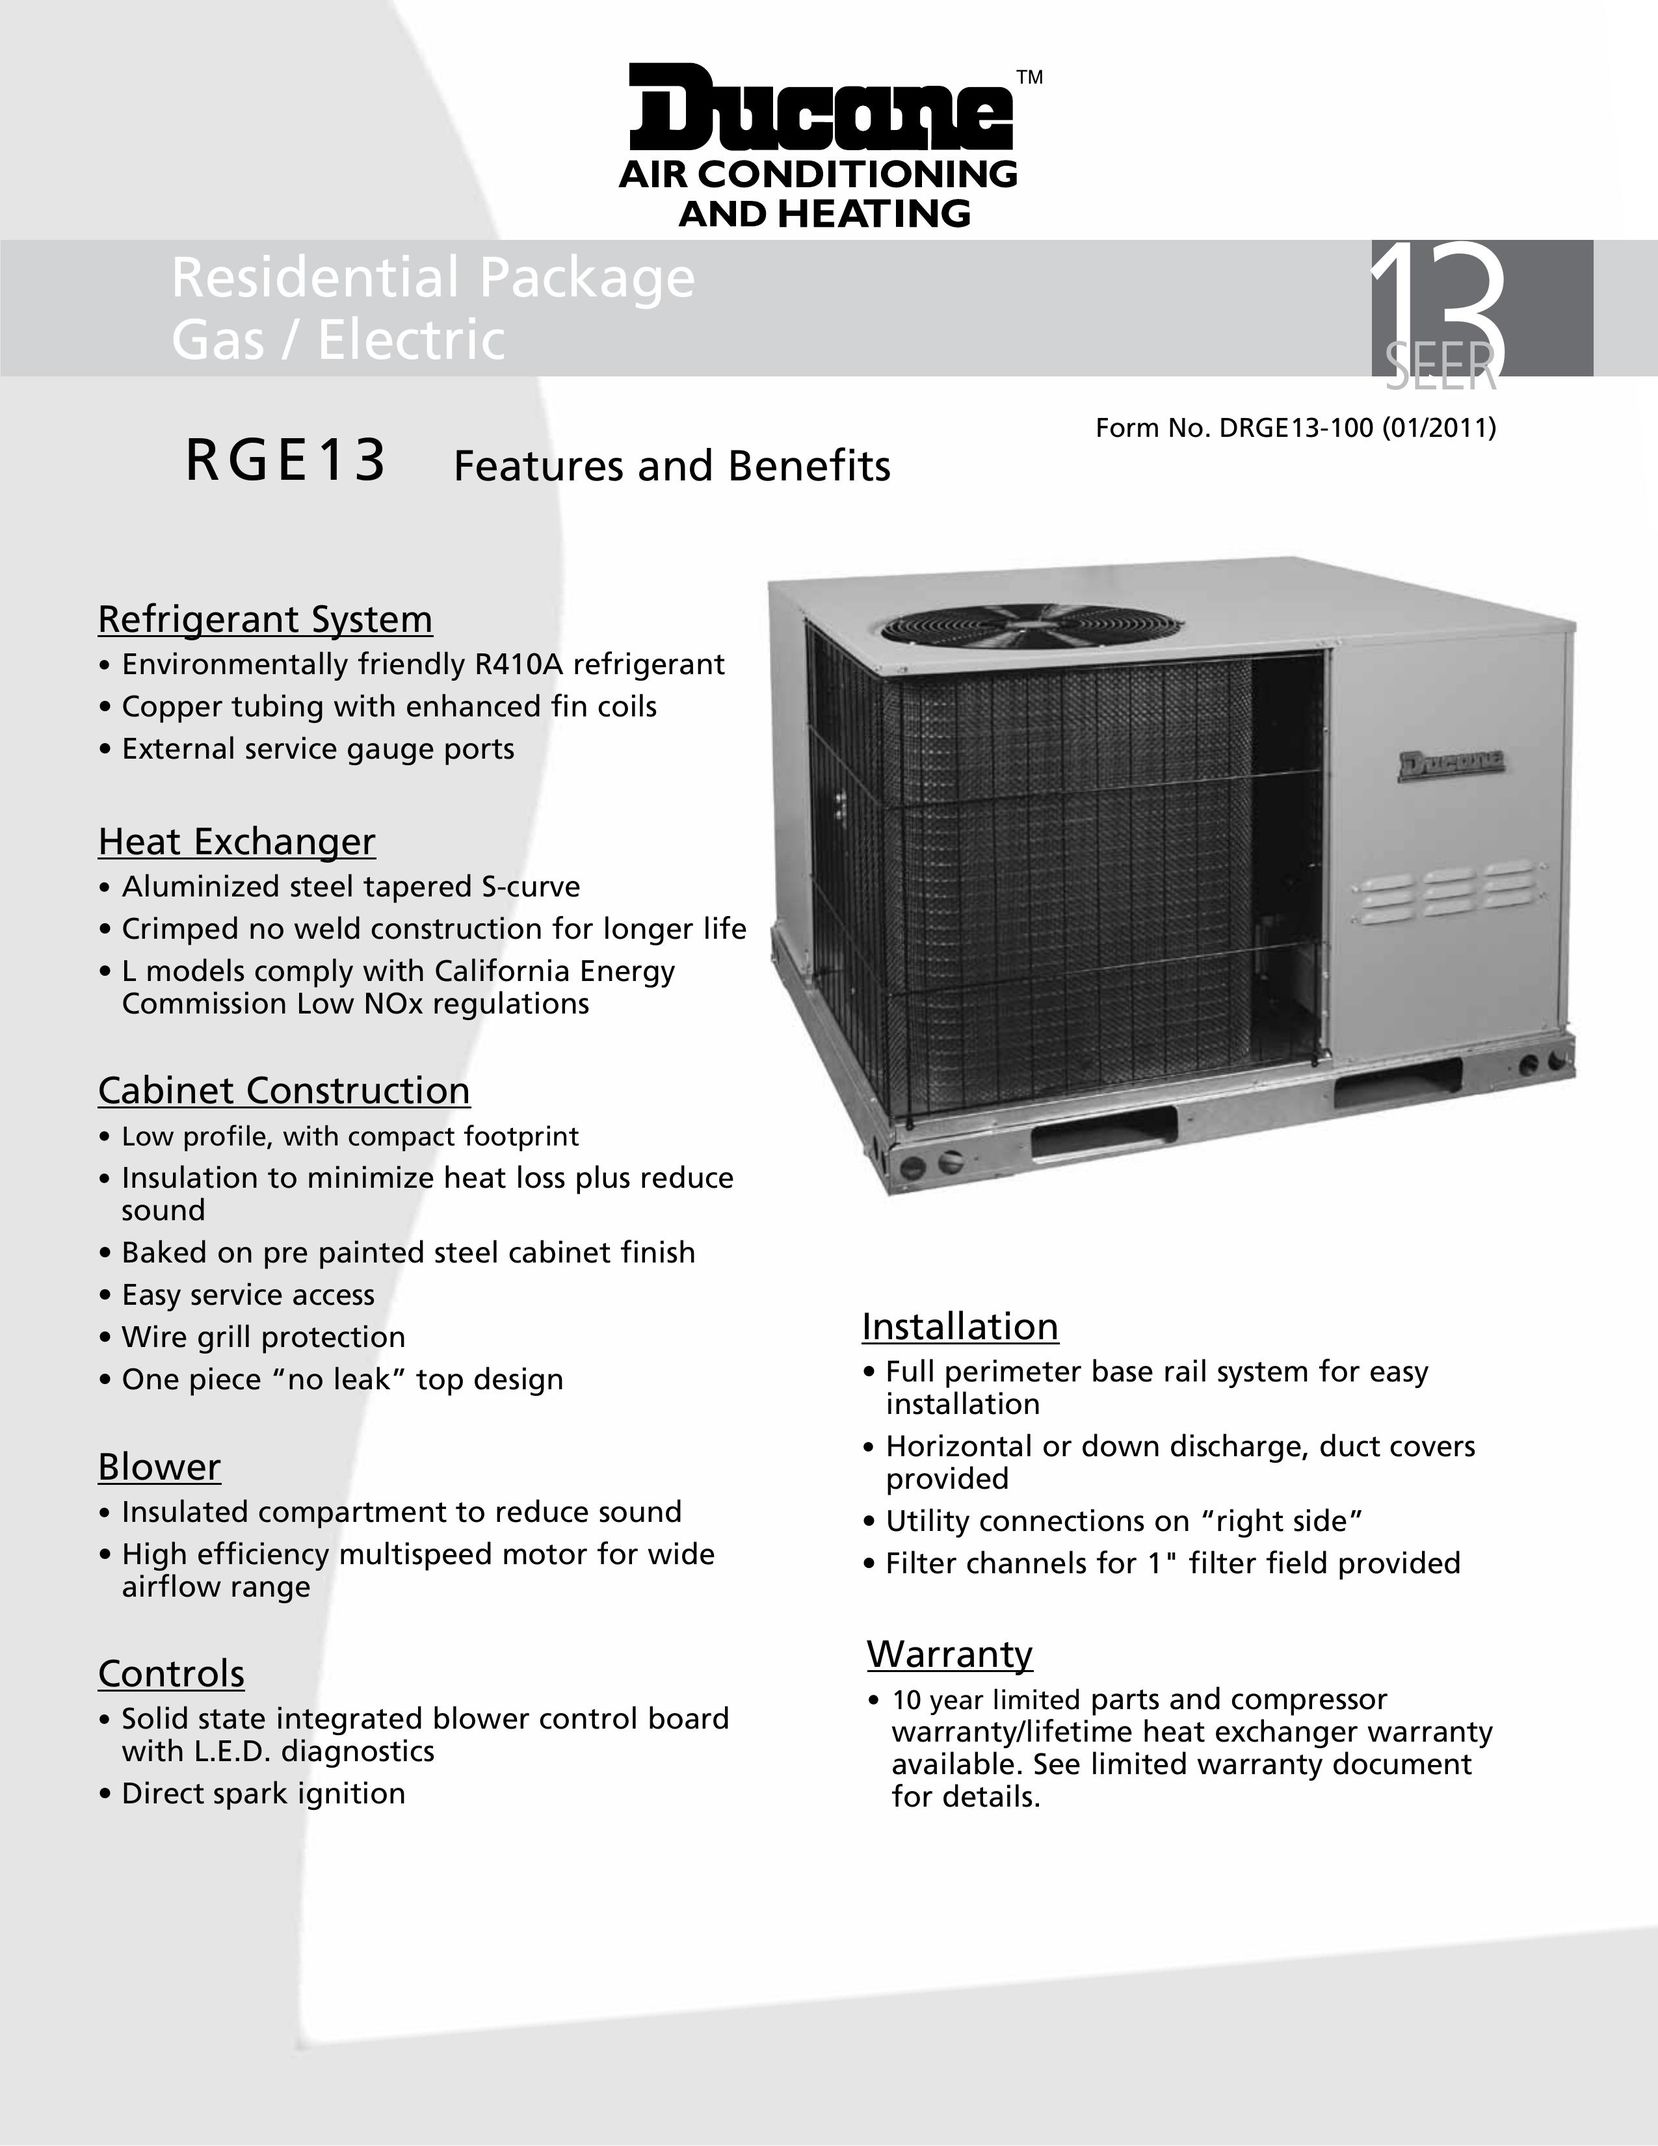 Ducane RGE13 Air Conditioner User Manual